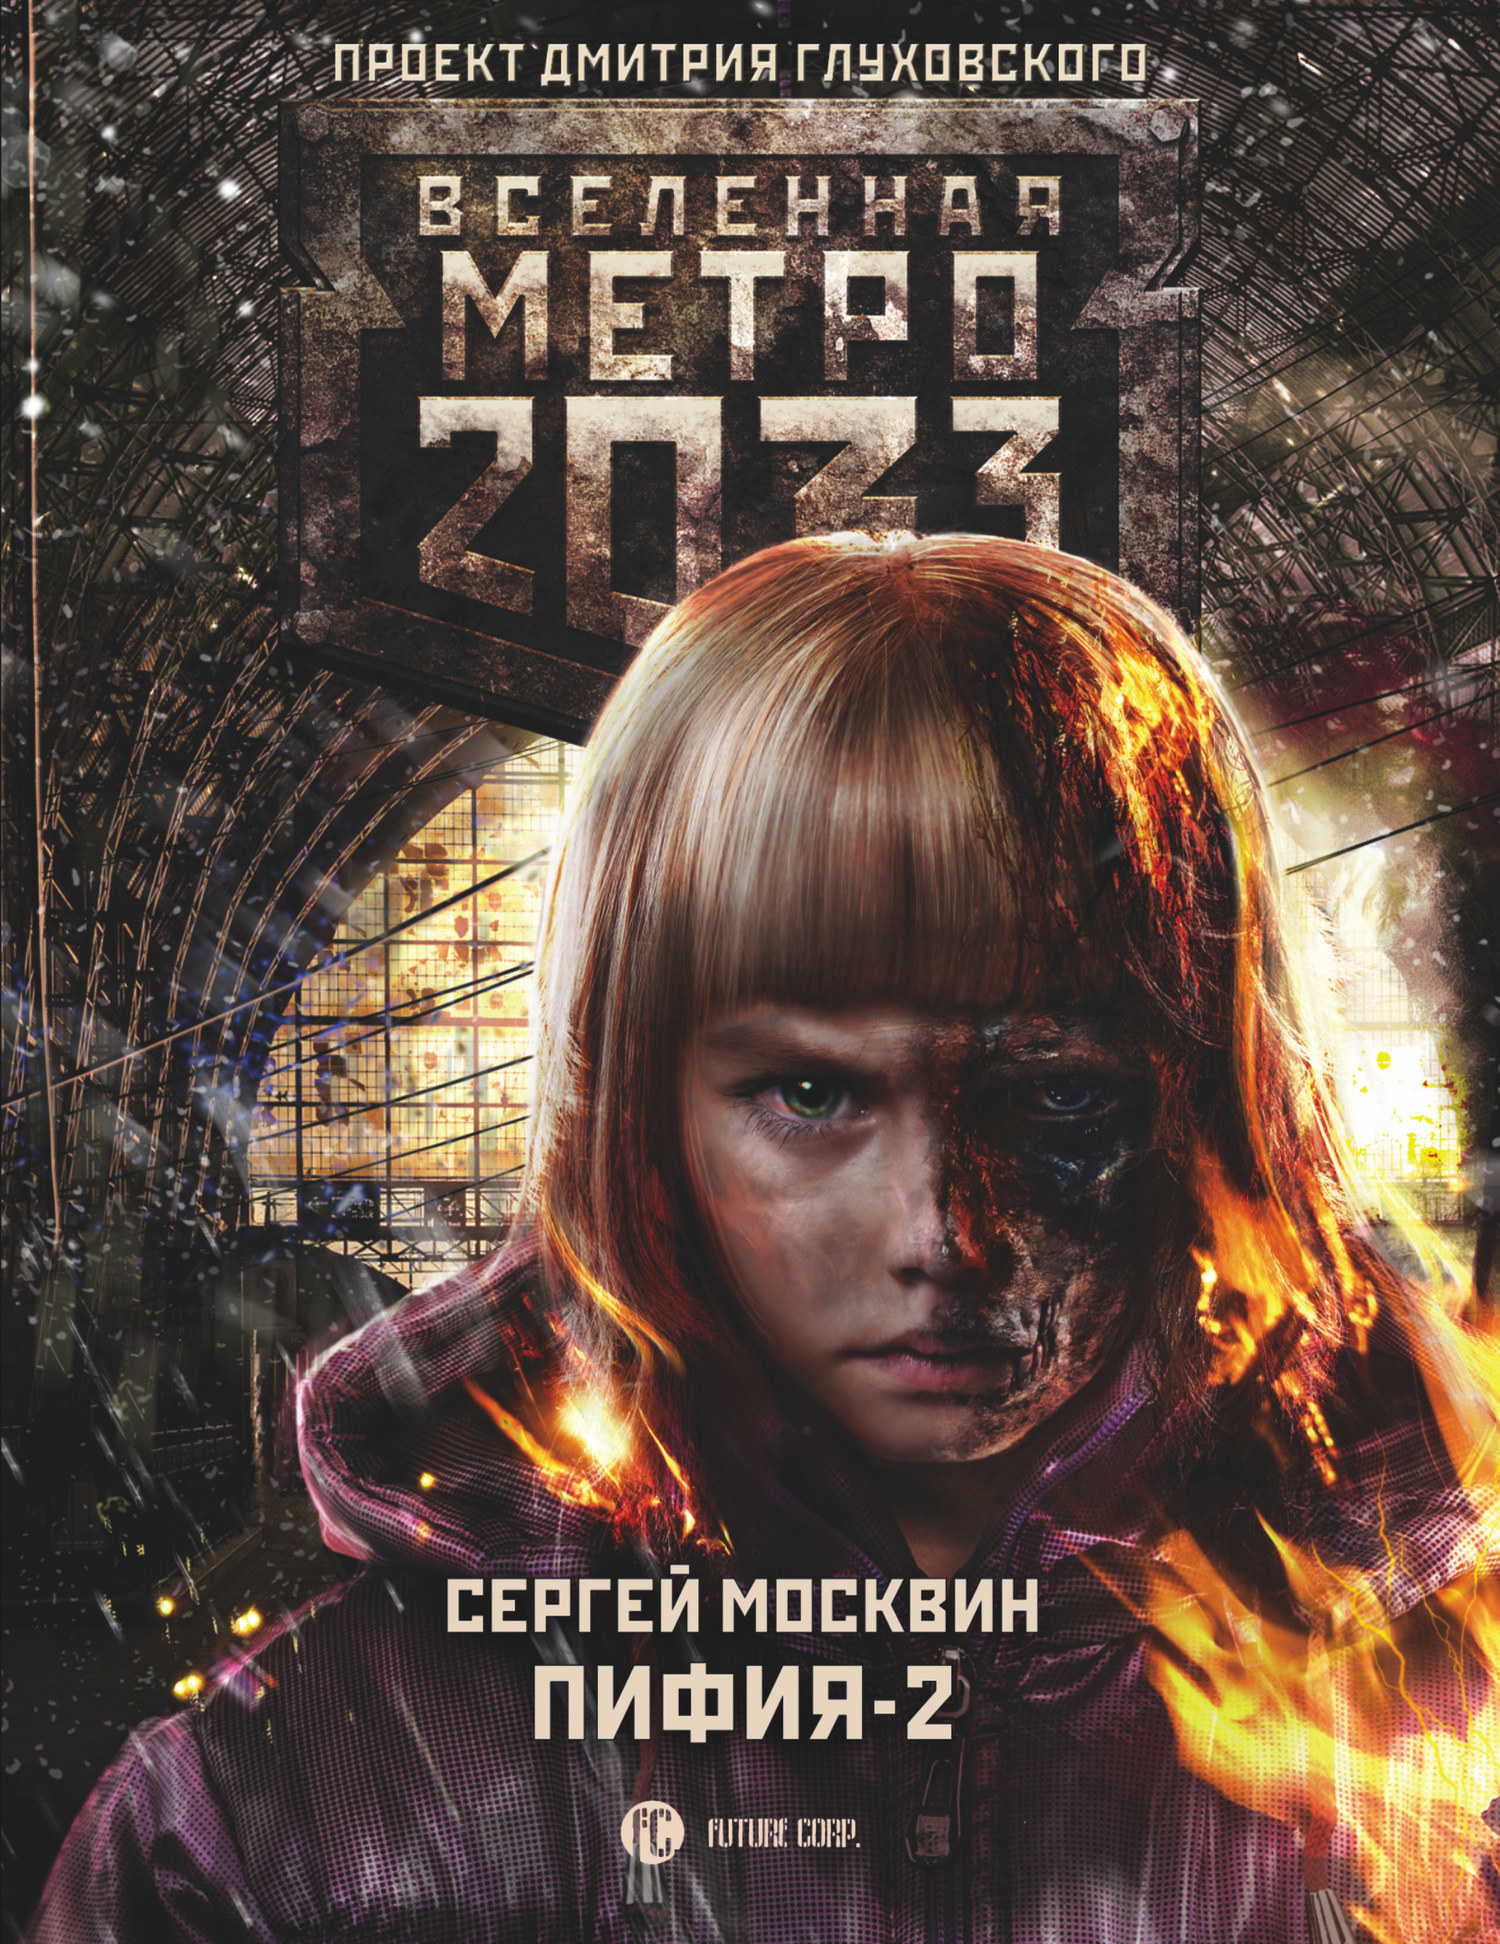 Москвин Сергей - Метро 2033: Пифия-2. В грязи и крови скачать бесплатно